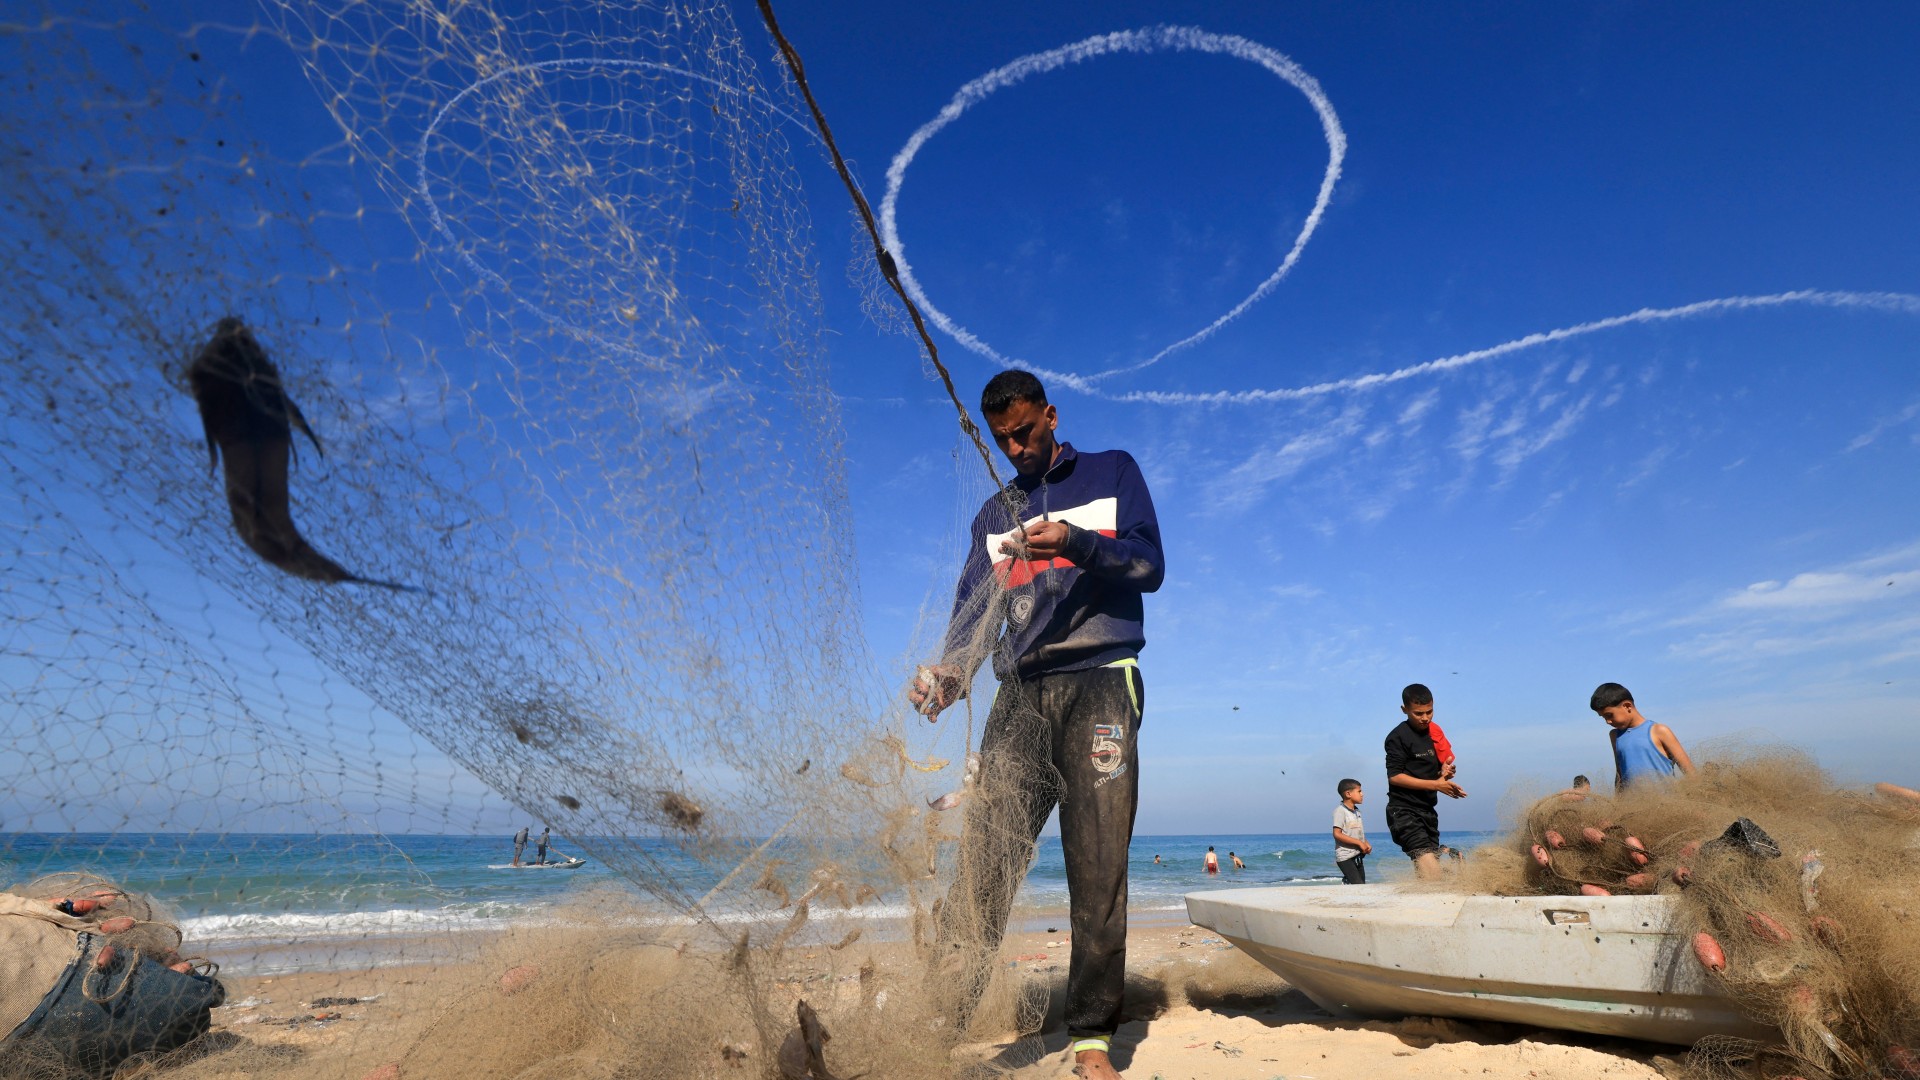 Des pêcheurs palestiniens trient leurs prises à Deir al-Balah alors que les traînées de vapeur d’un avion israélien tapissent le ciel, le 30 novembre (AFP/Mahmud Hams)